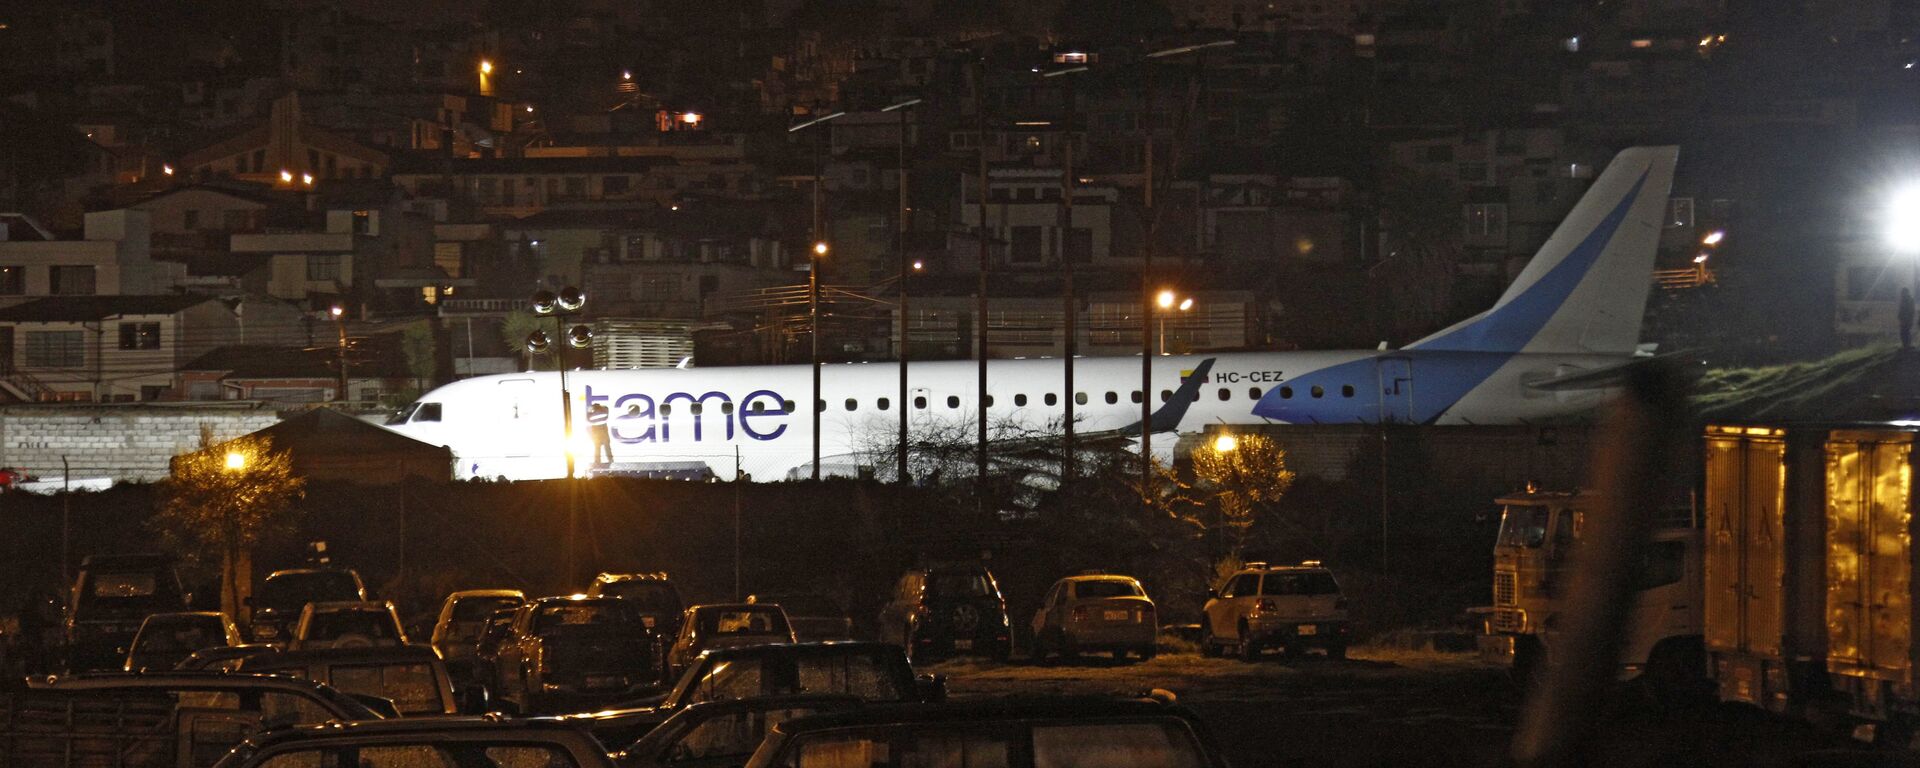 Avión de aerolínea ecuatoriana sale de pista en Aeropuerto internacional de Quito - Sputnik Mundo, 1920, 07.04.2021